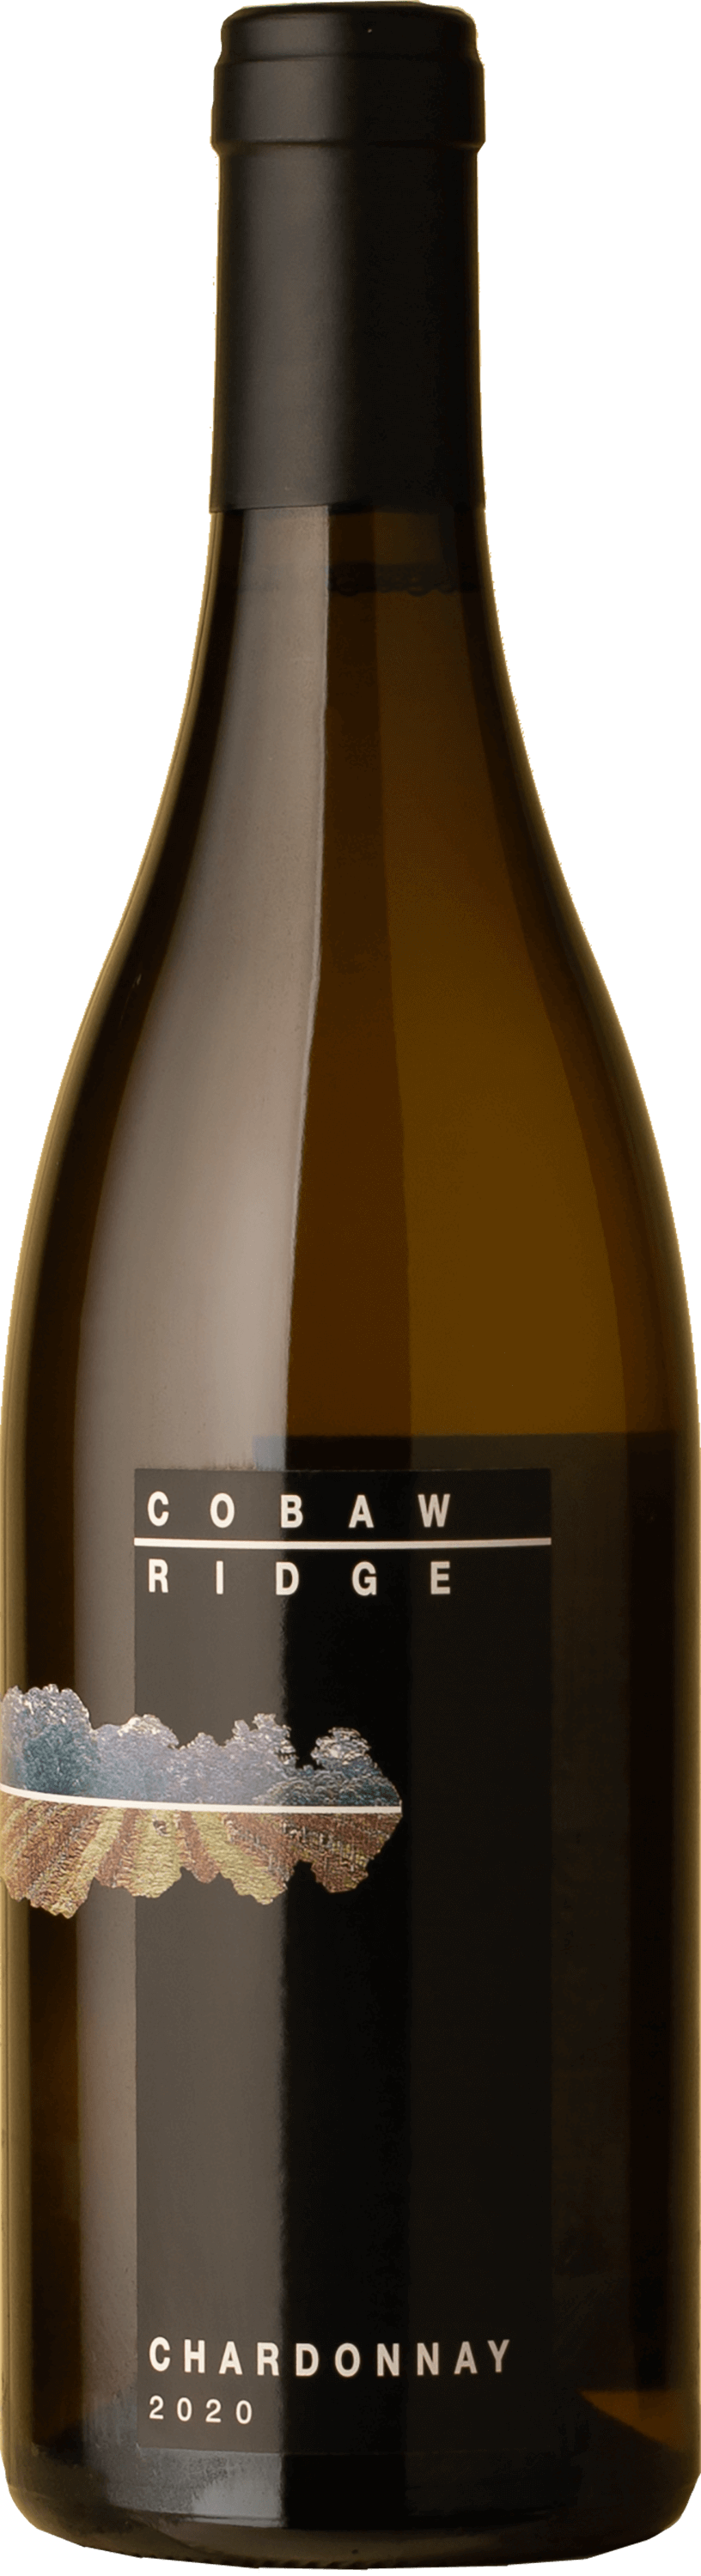 Cobaw Ridge - Chardonnay 2020 White Wine